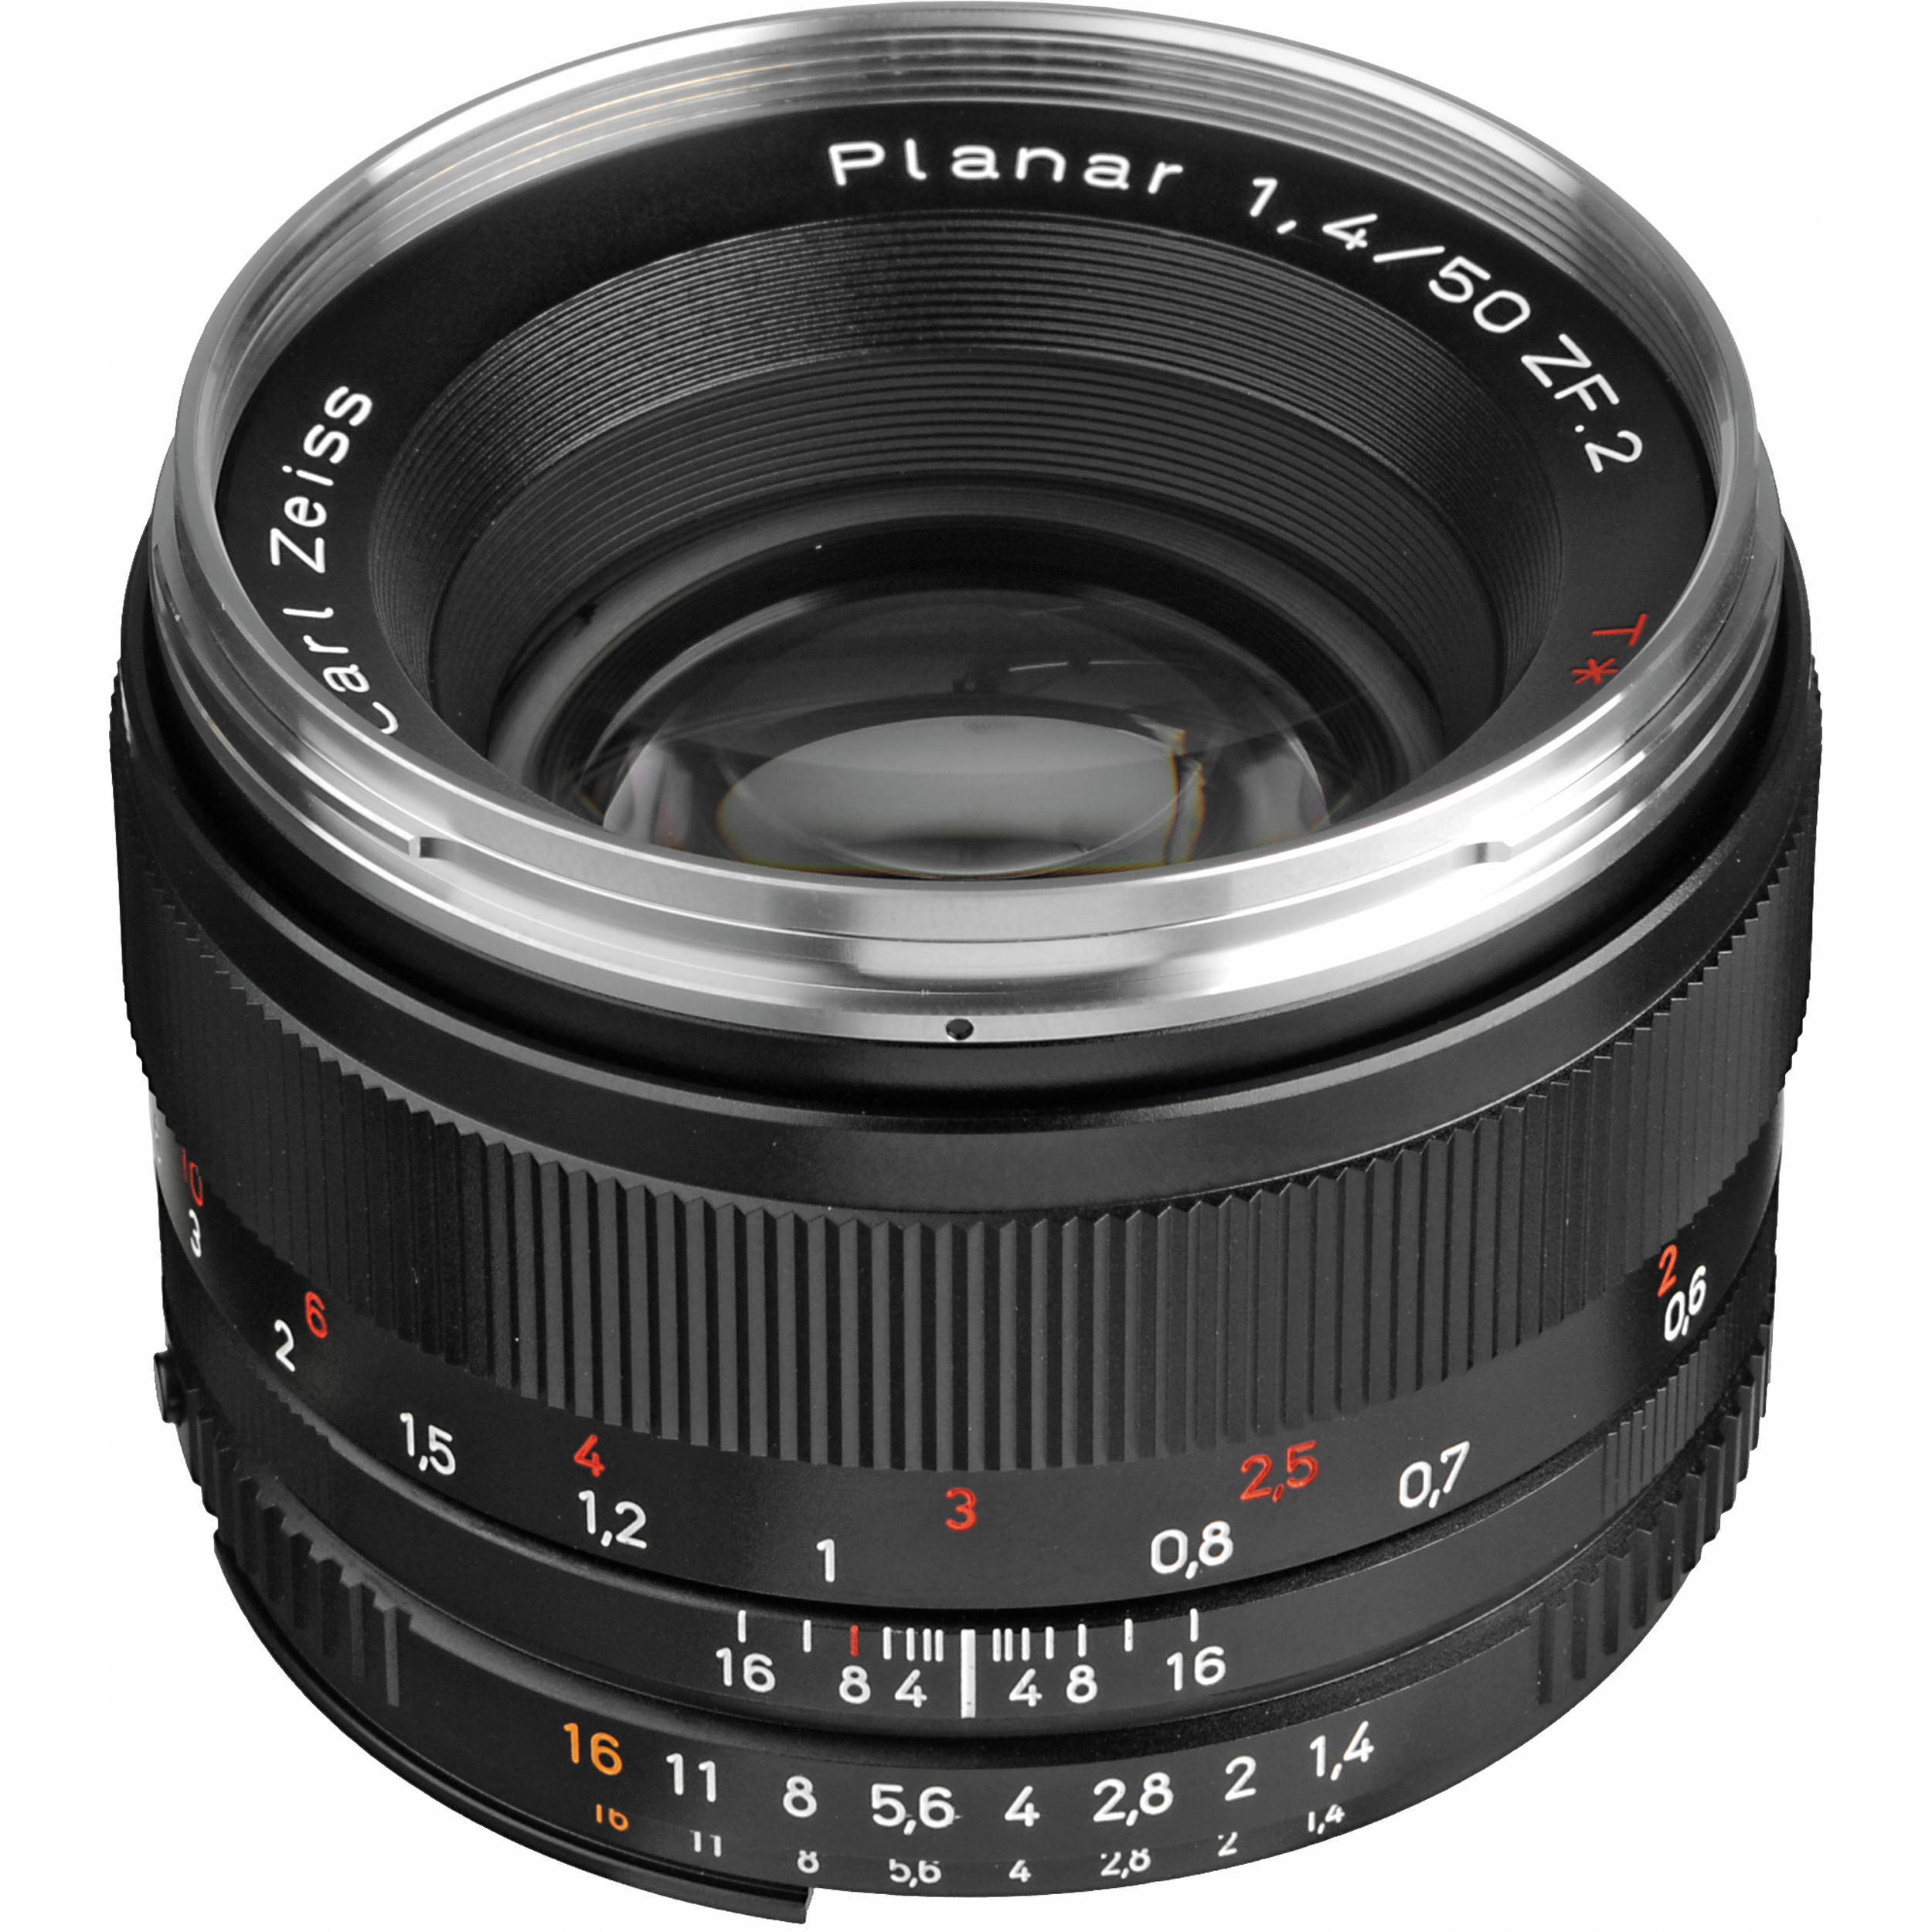 Ống kính Carl zeiss 50mm f1.4 for Canon/Nikon- Chính hãng